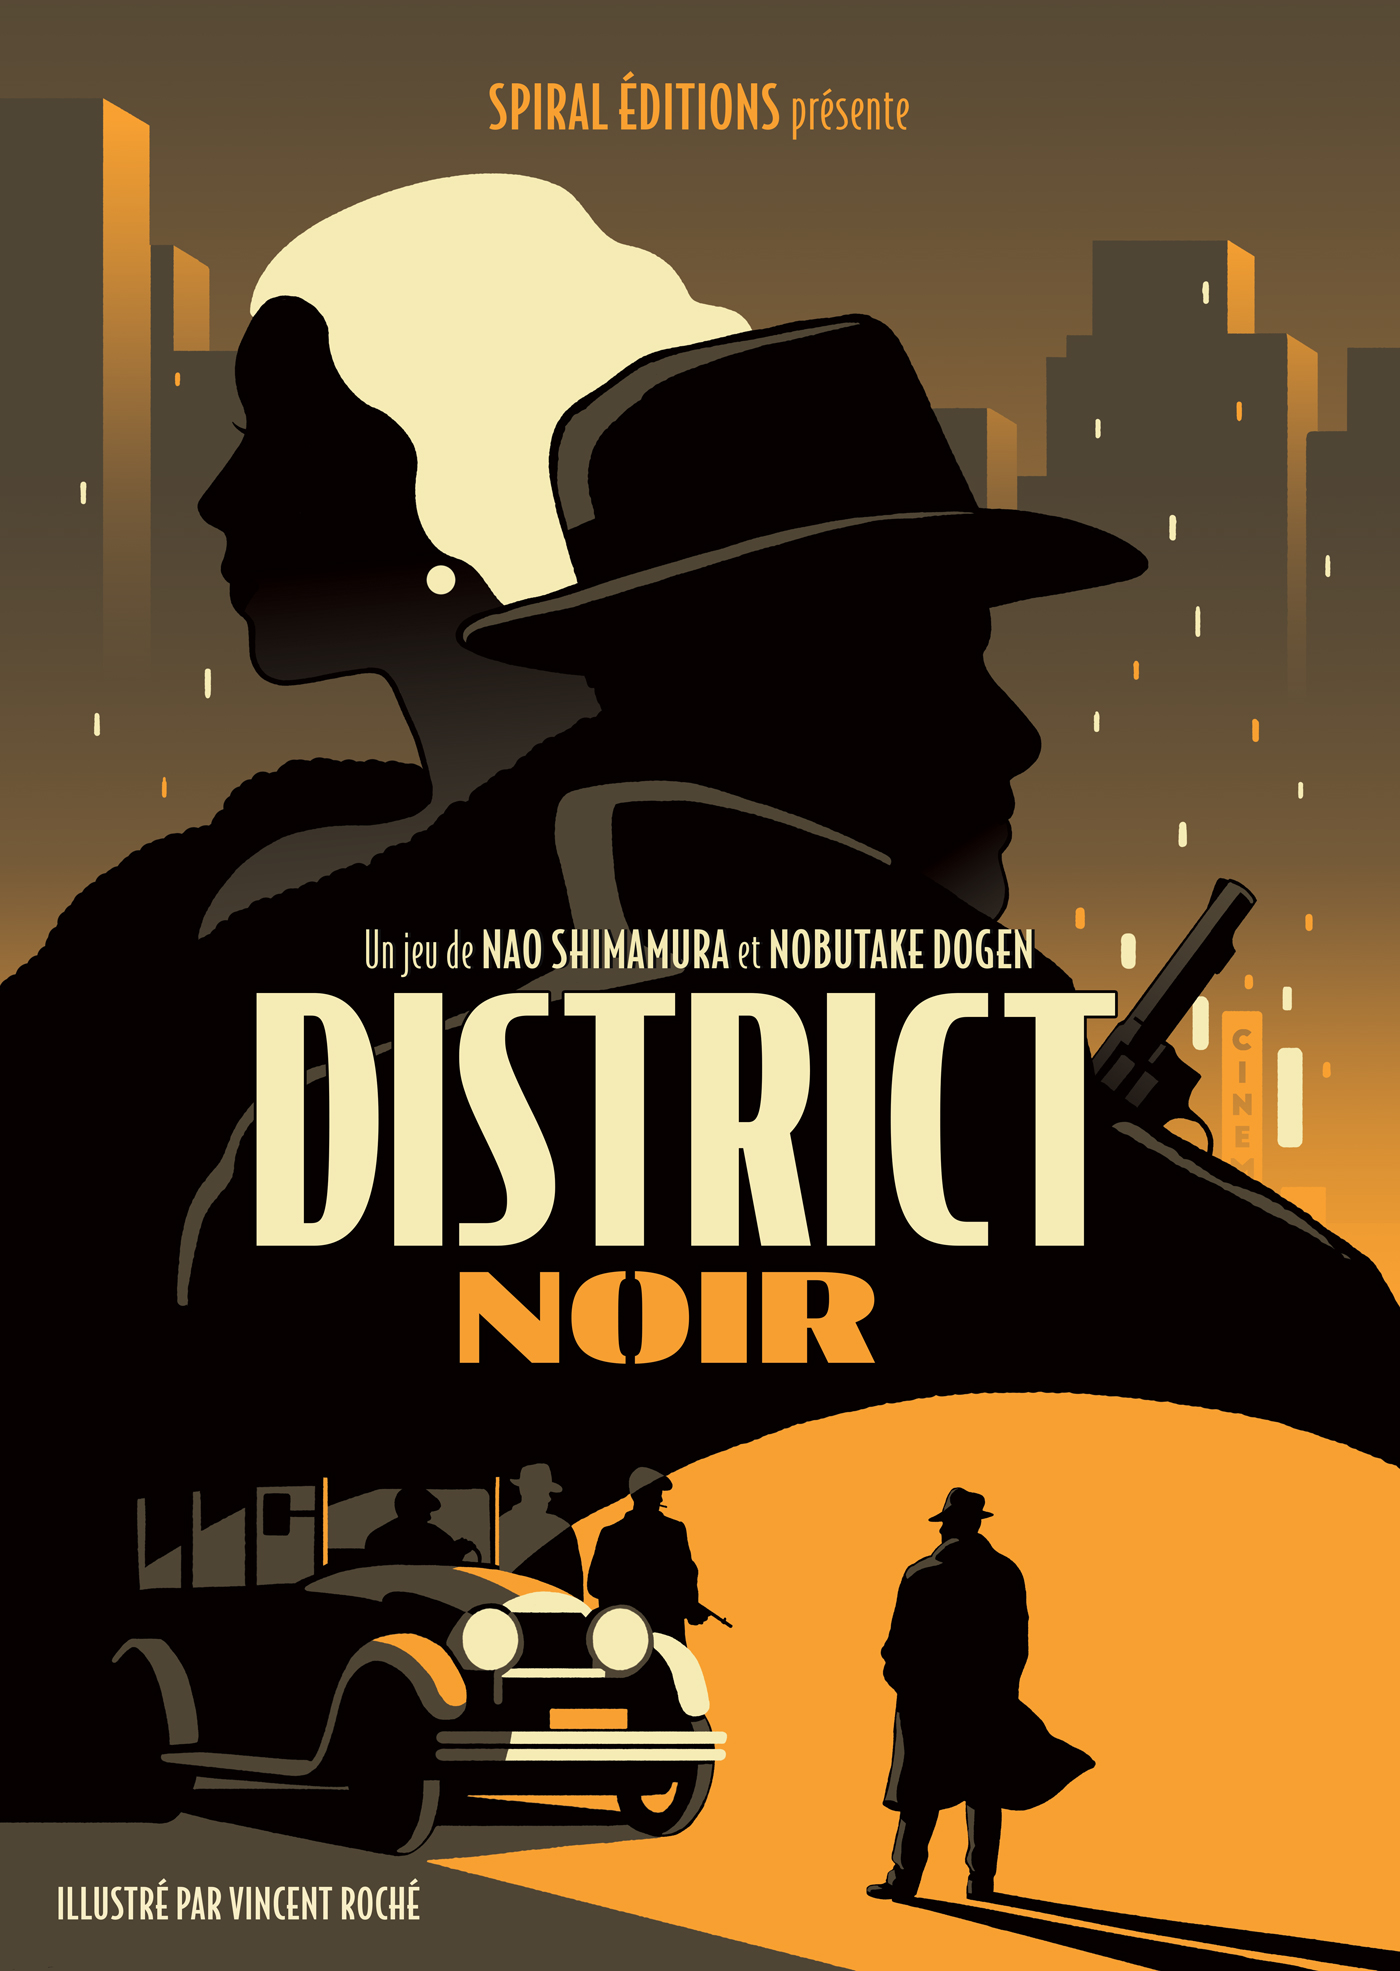 District Noir